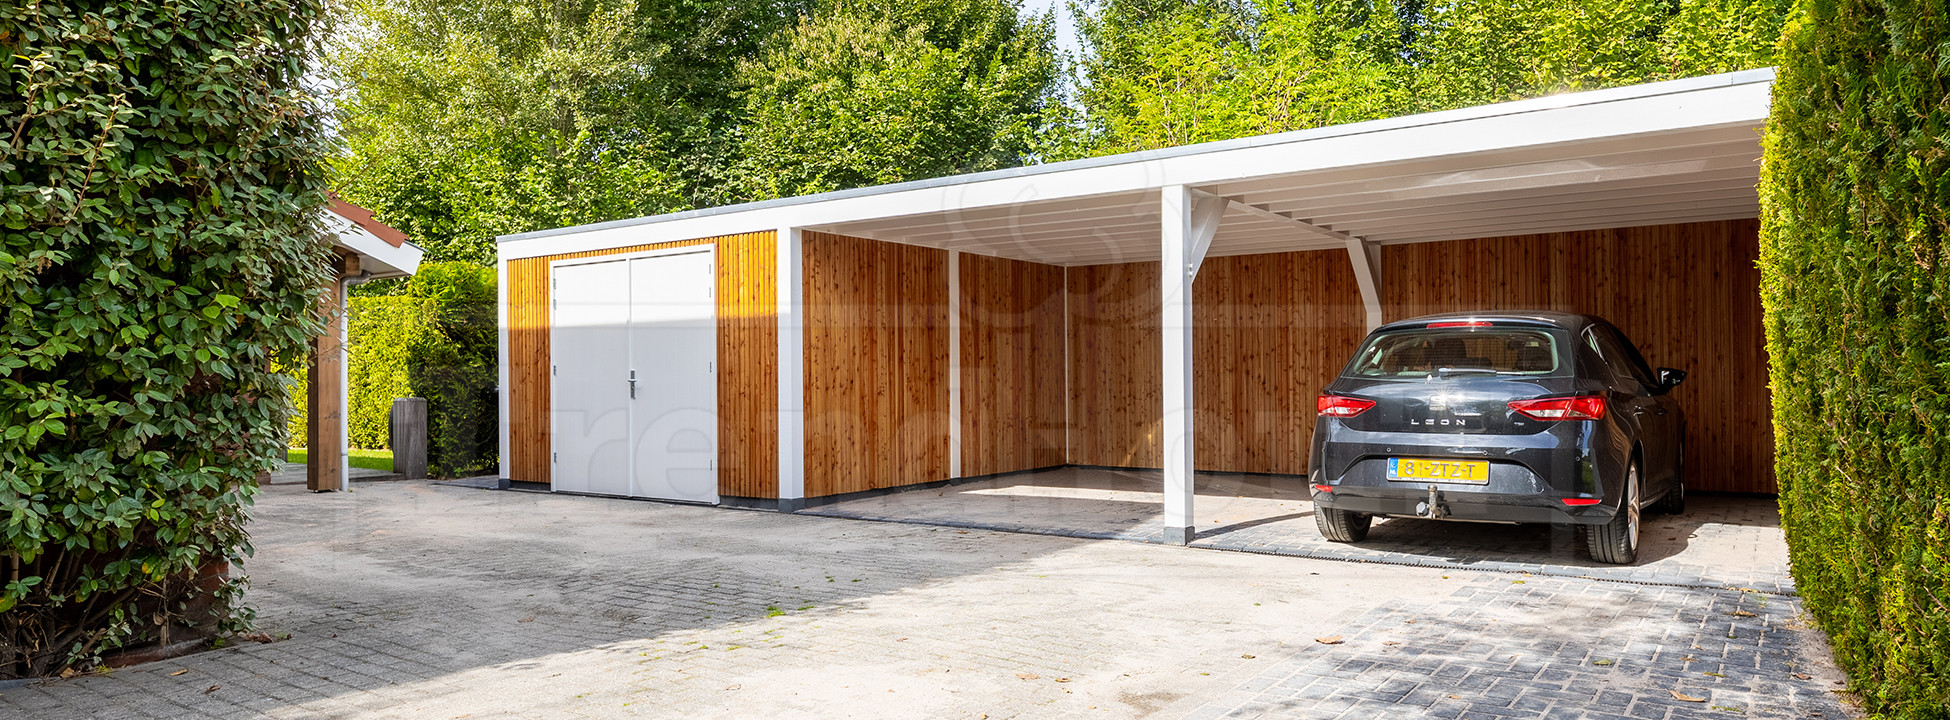 maatwerk-Trendhout-palermo-garage-of-schuur-met-dubbele-carport-moderne-uitstraling-dubbele-hardhouten-garagedeuren